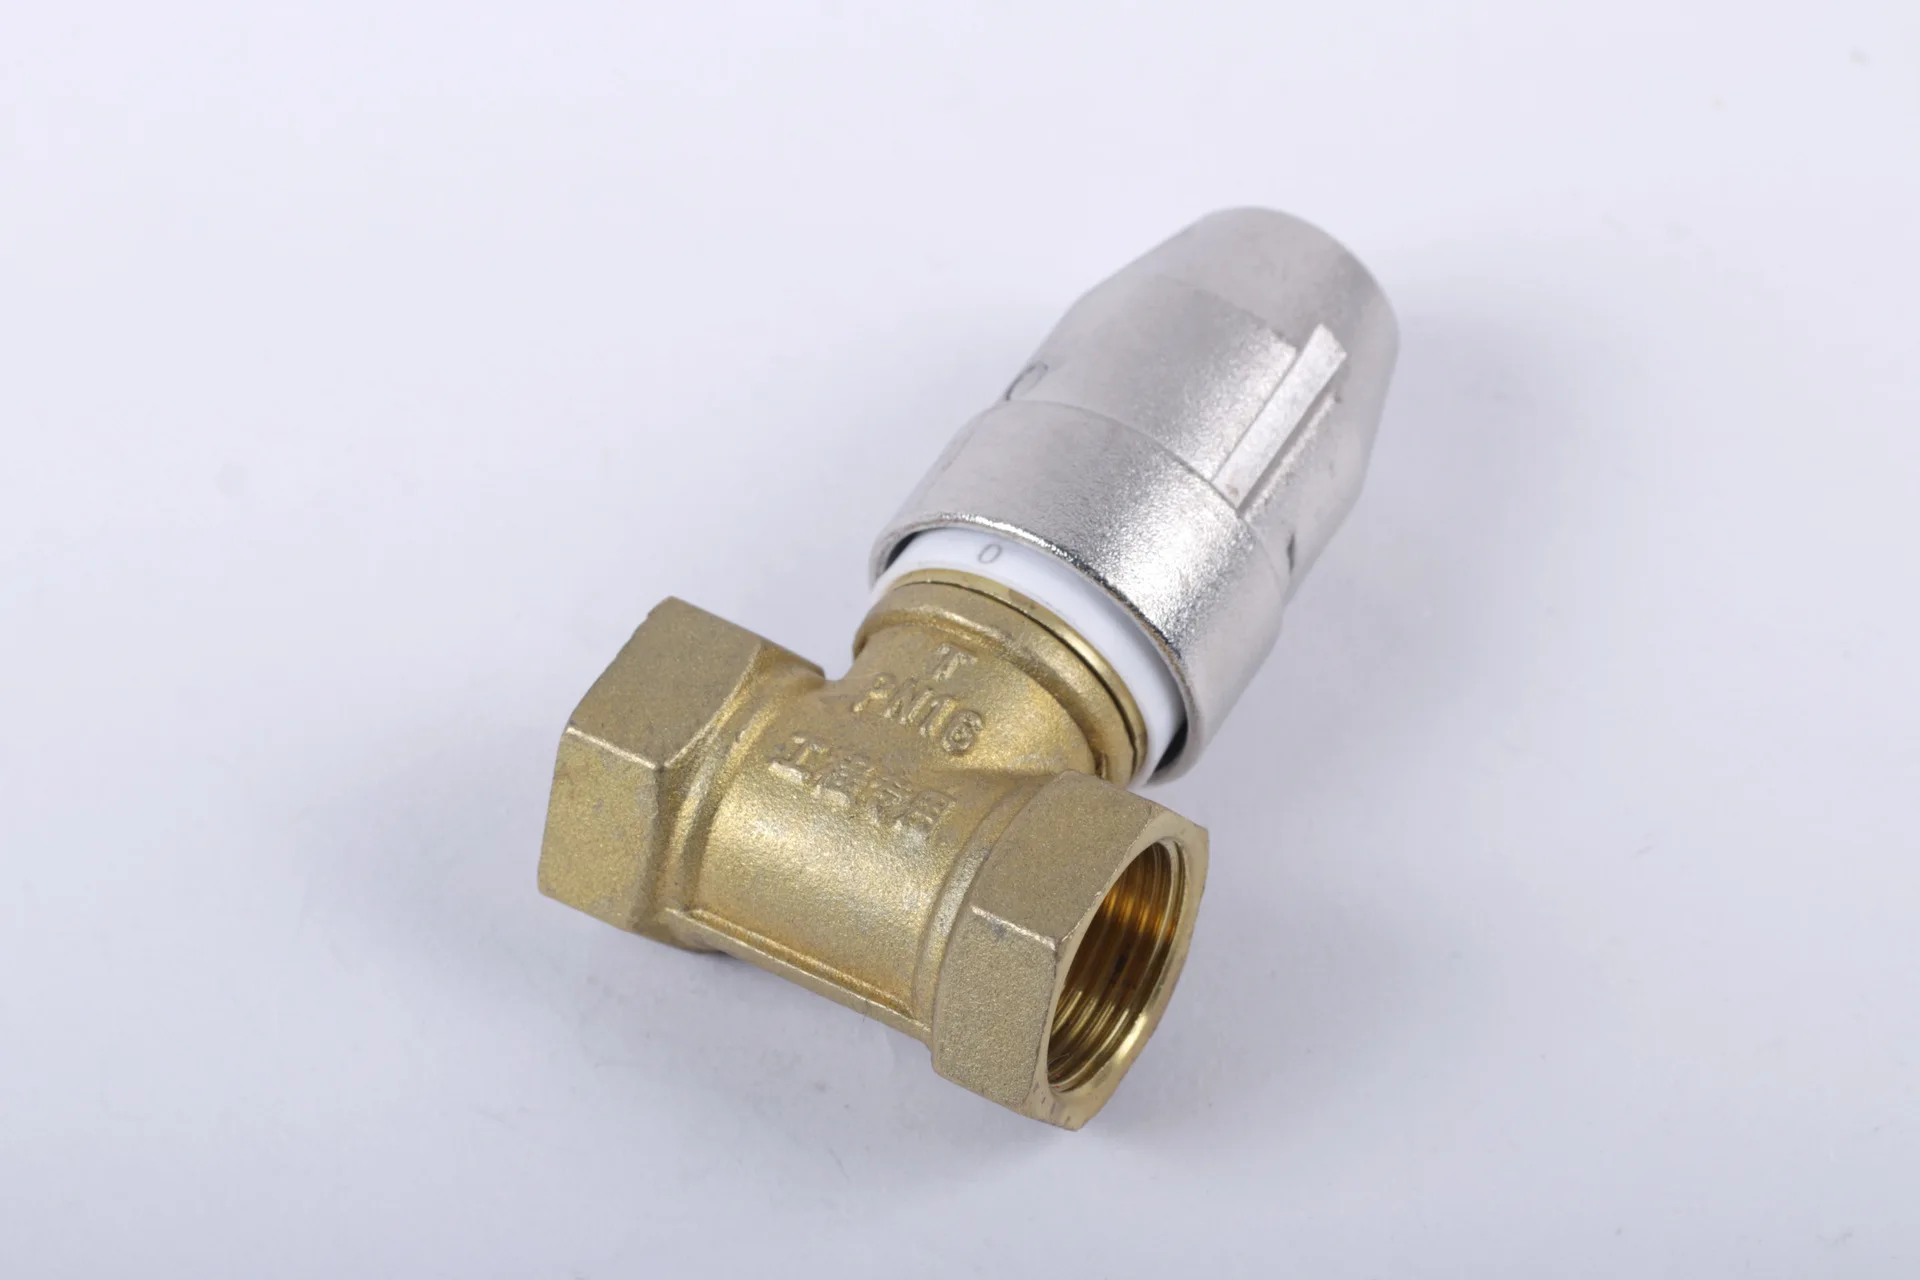 Клапан ручного управления DN25 латунь магнитный замок клапана ключ масштаба поток воды yuhuan медь клапан Прямая продажа с фабрики